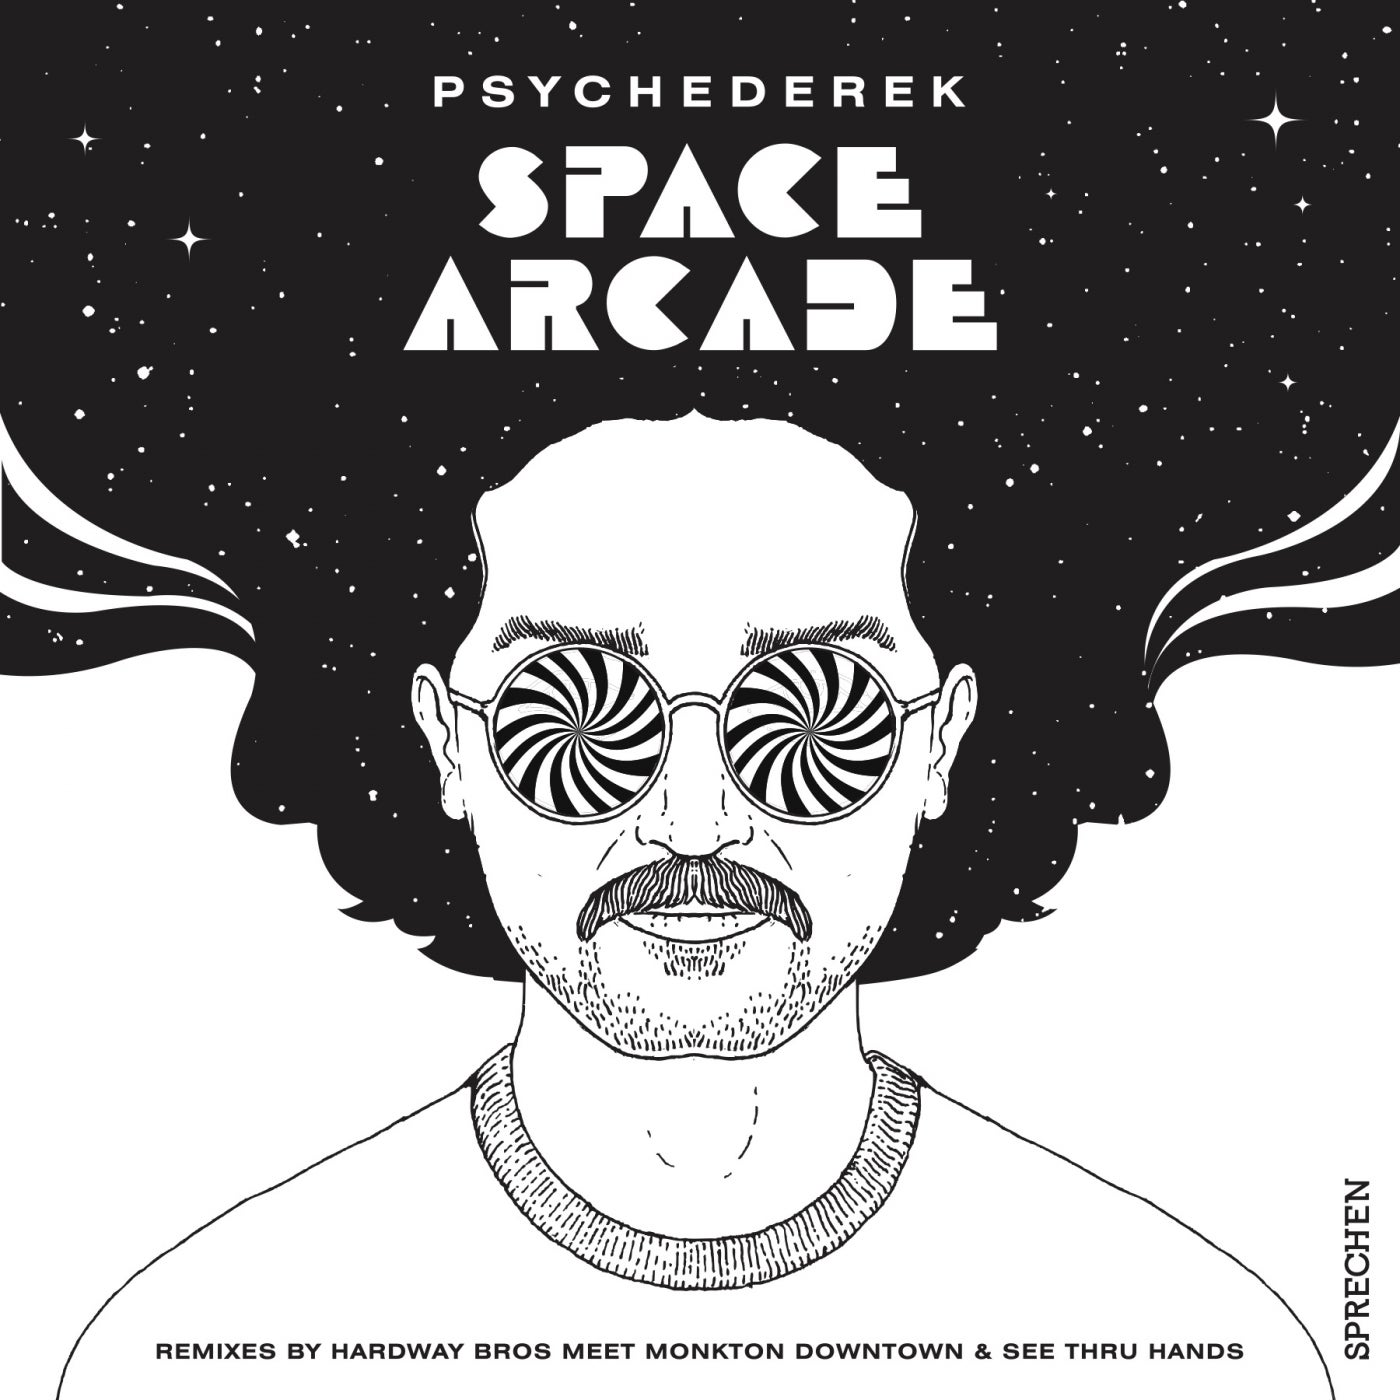 Psychederek - Space Arcade [Sprechen]